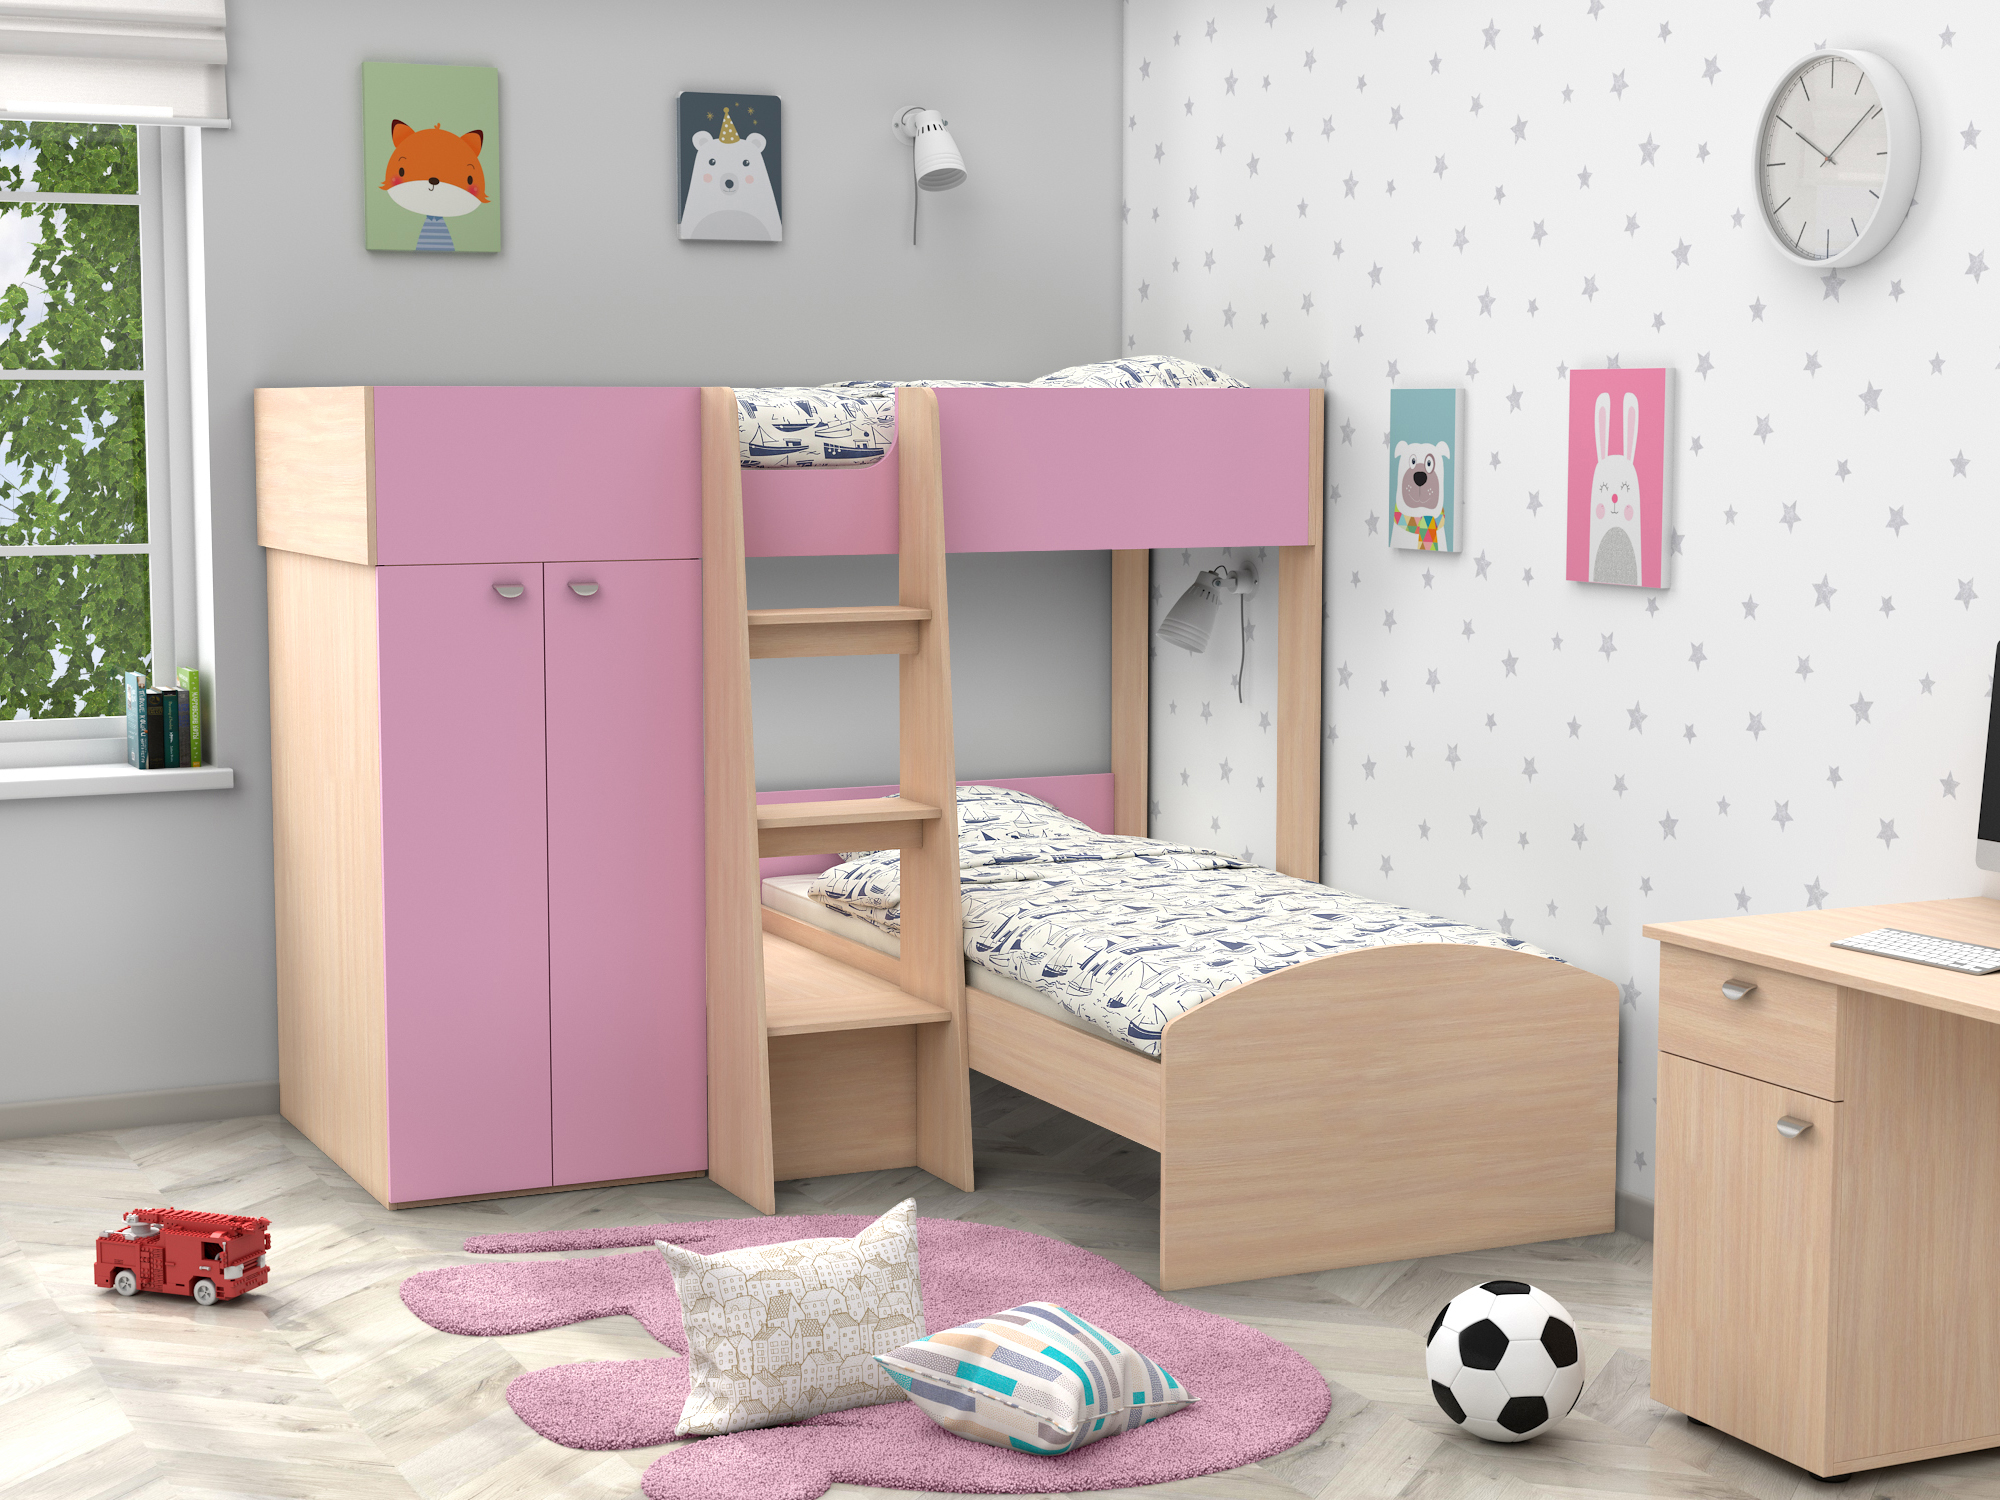 Двухъярусная кровать Golden Kids-4 (90х200) Розовый, Белый, Бежевый, ЛДСП двухъярусная кровать golden kids 4 90х200 дуб вотан бежевый коричневый темный лдсп